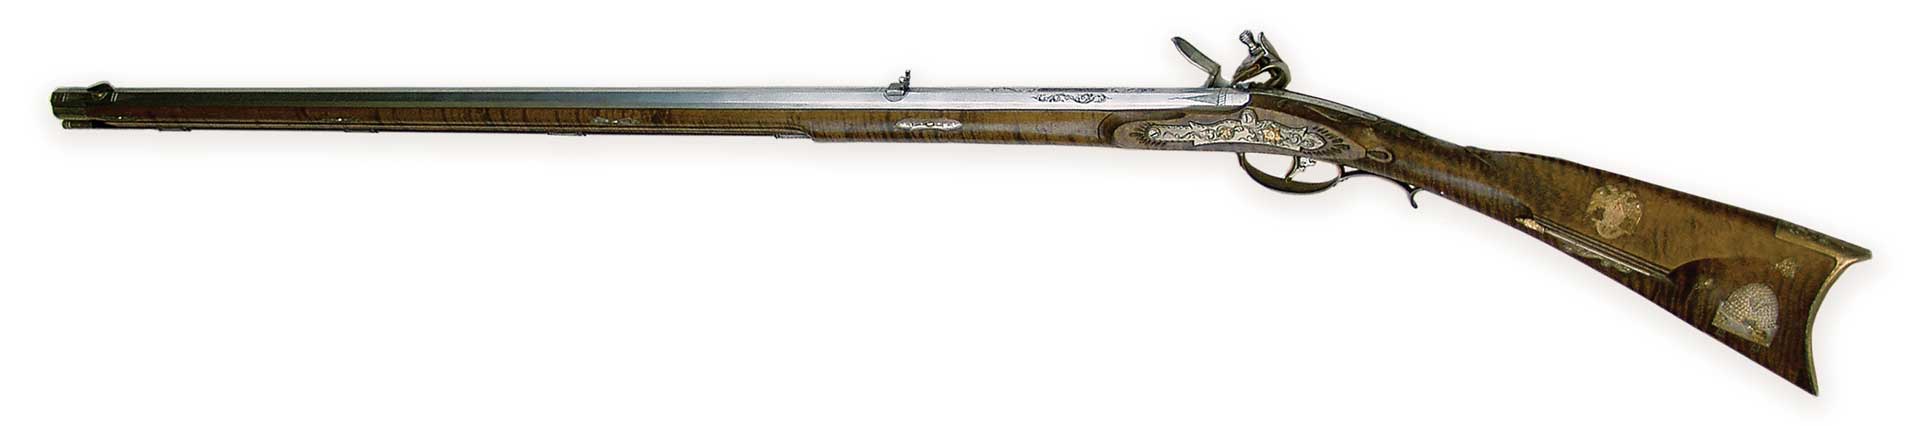 left side gun musket old vintage artwork rifle